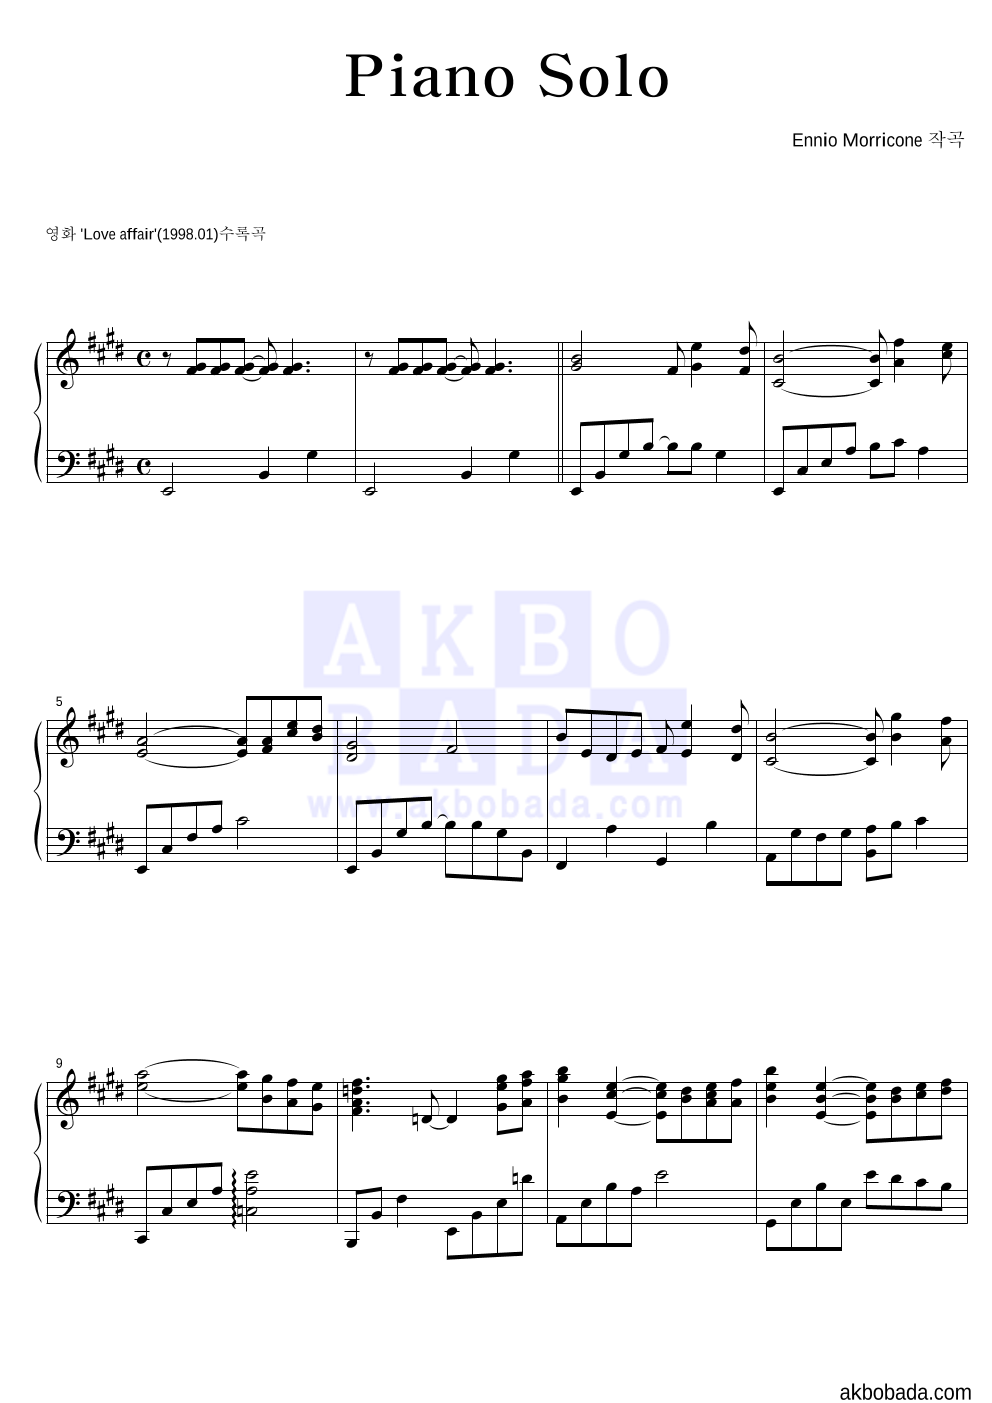 Ennio Morricone - Piano Solo 피아노 2단 악보 